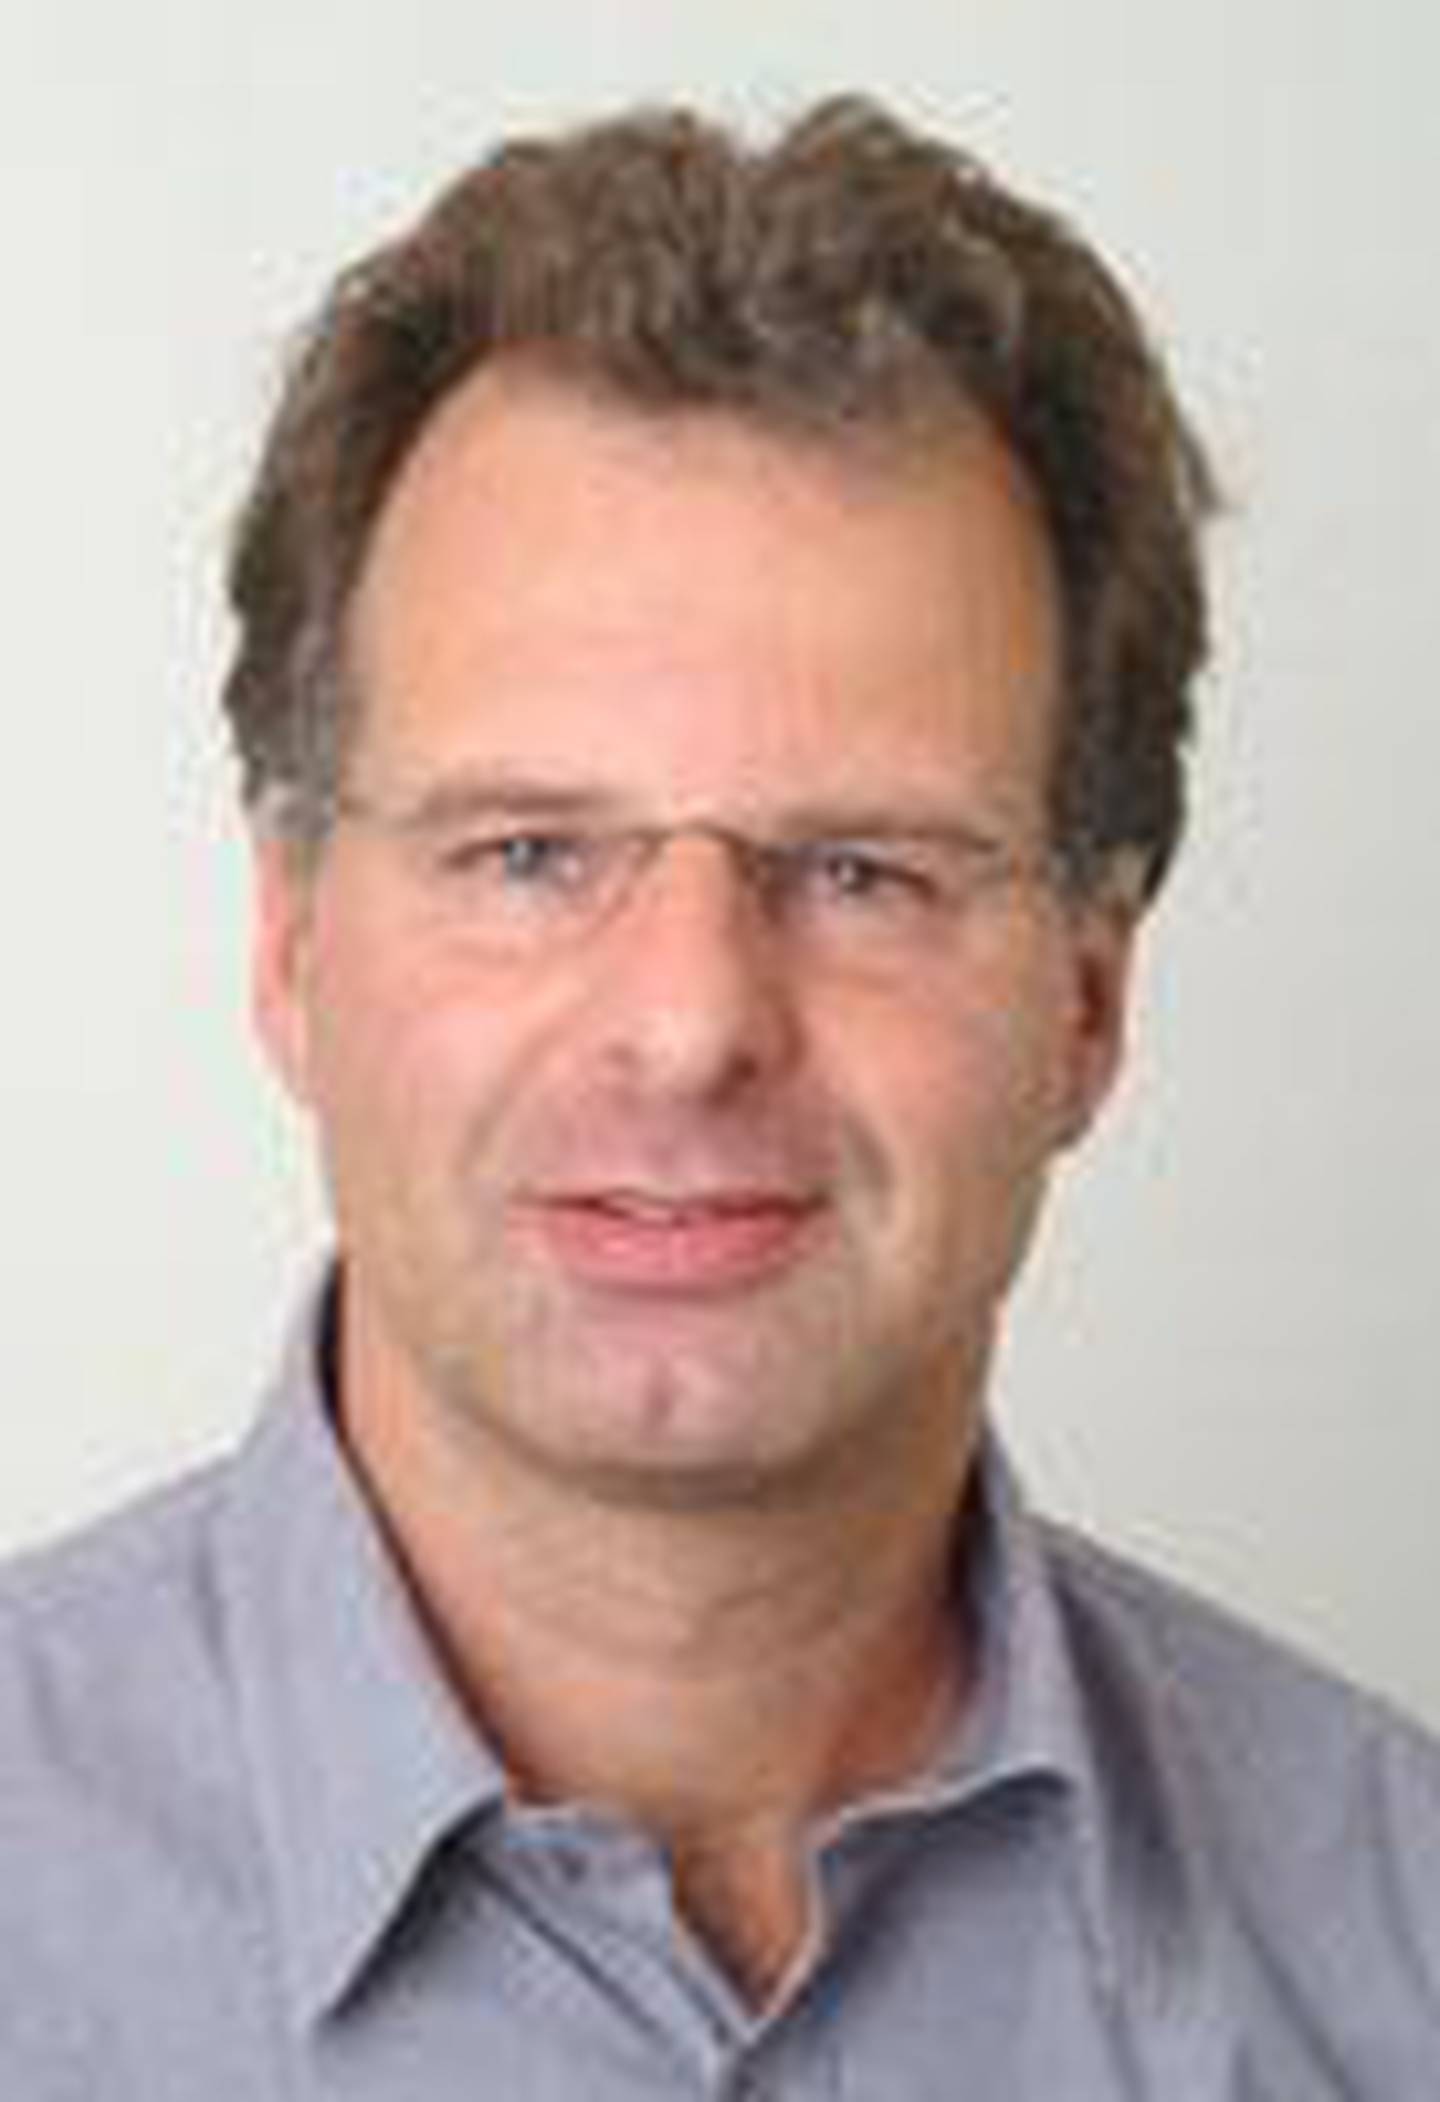  Jens Saugstad er professor i filosofi ved Universitet i Oslo. 